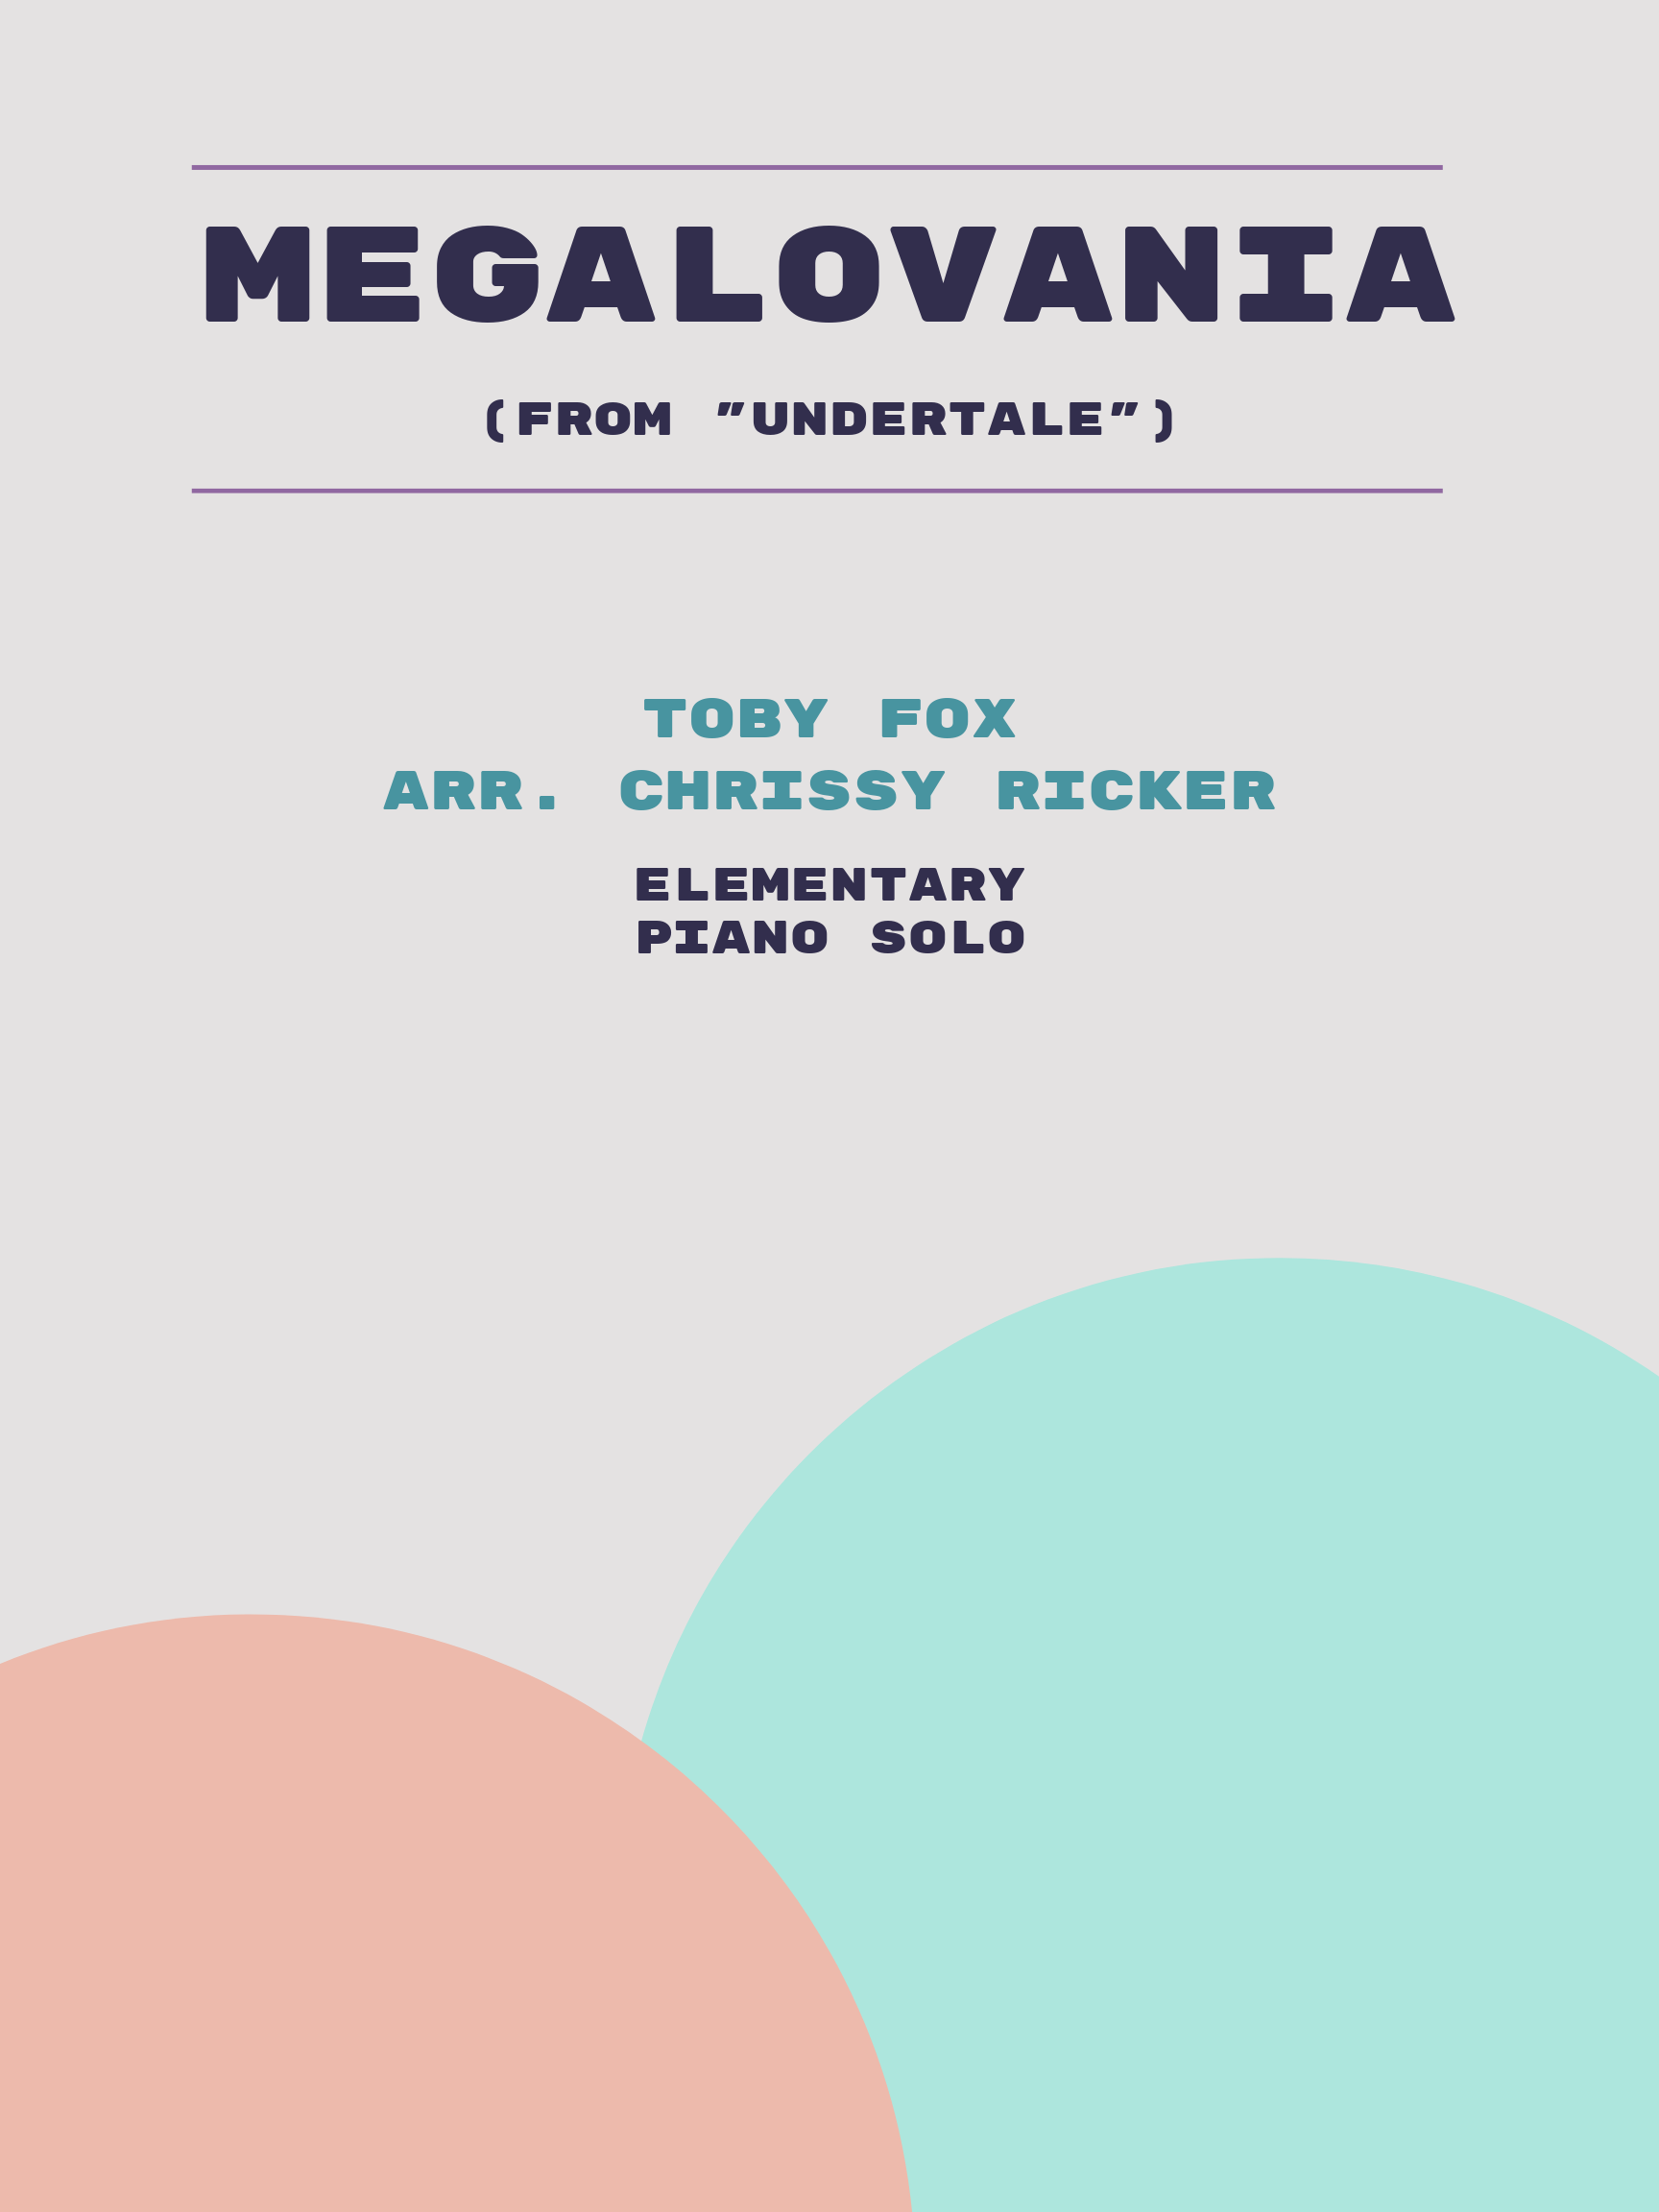 Megalovania by Toby Fox